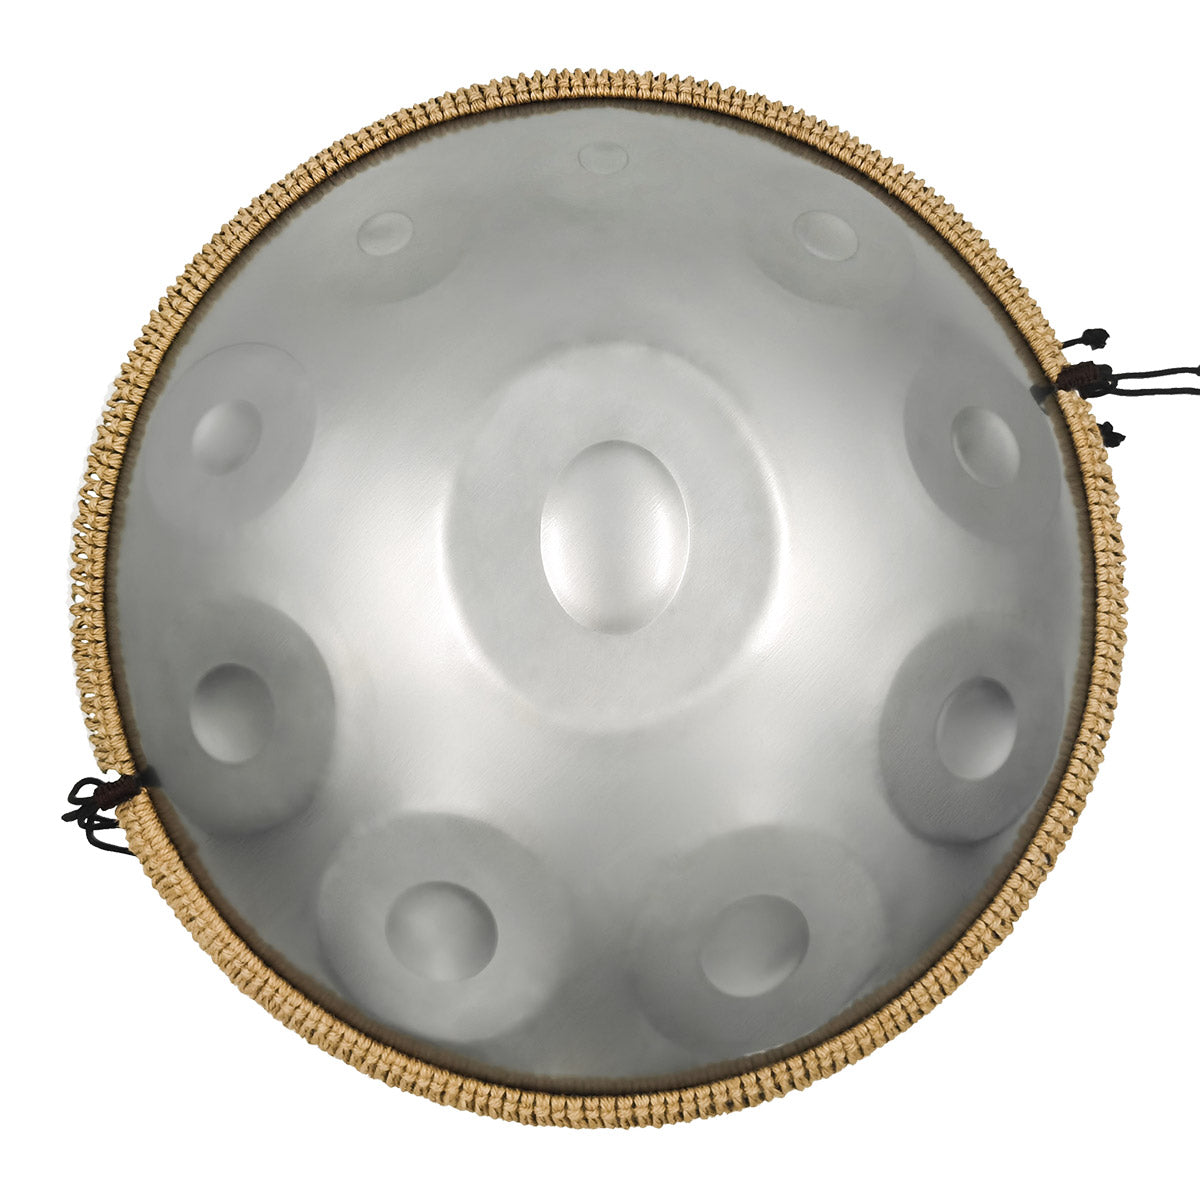 MiSoundofNature STL Handpan Drum Sterling Silber 22 Zoll 10 Noten D-Moll Kurd Scale Hangdrum